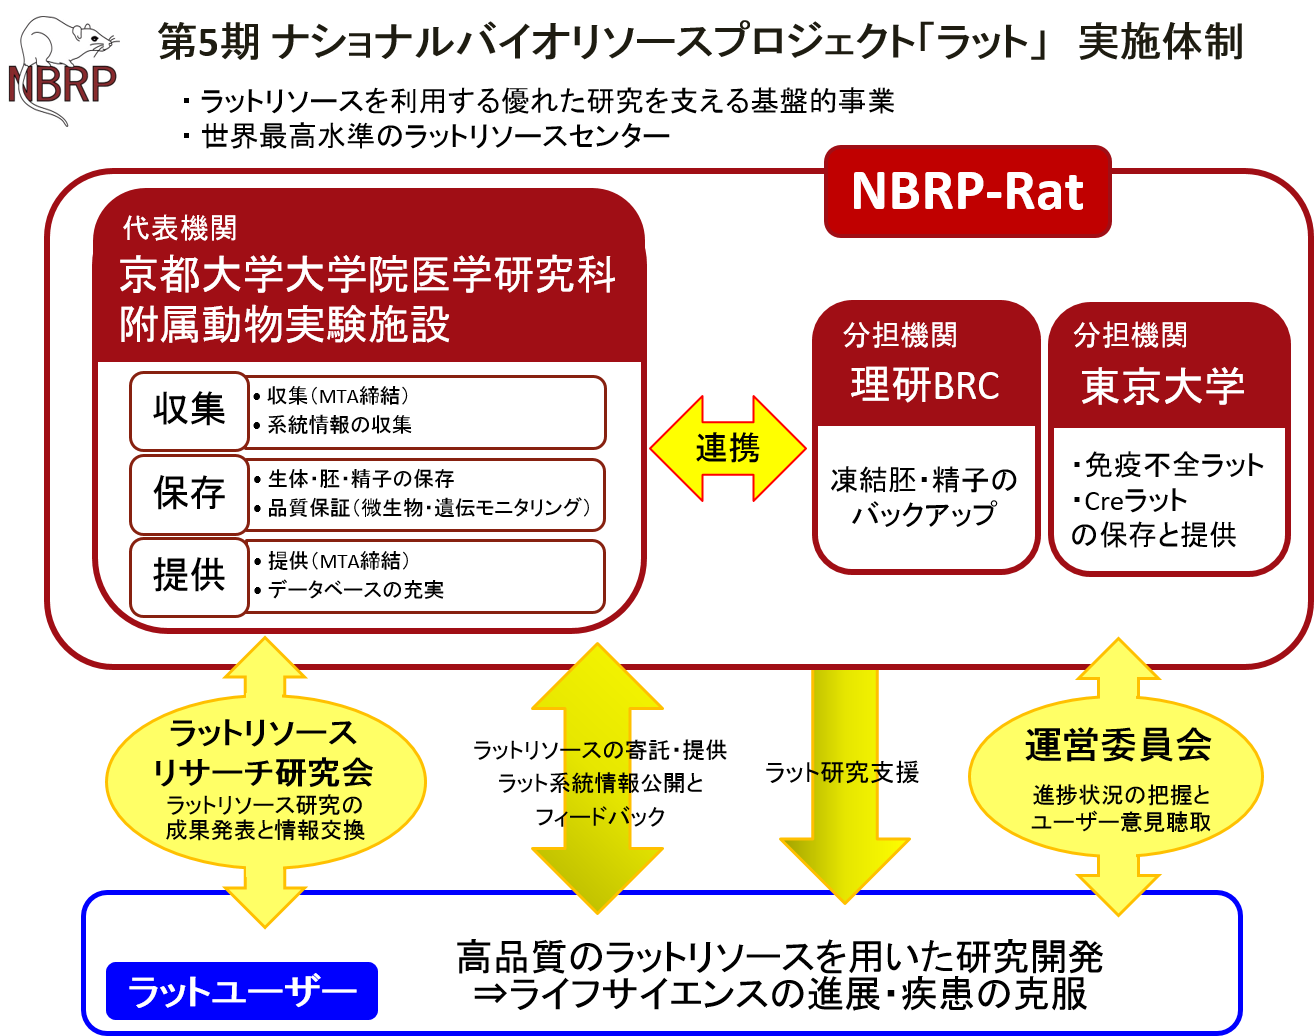 NBRP structure